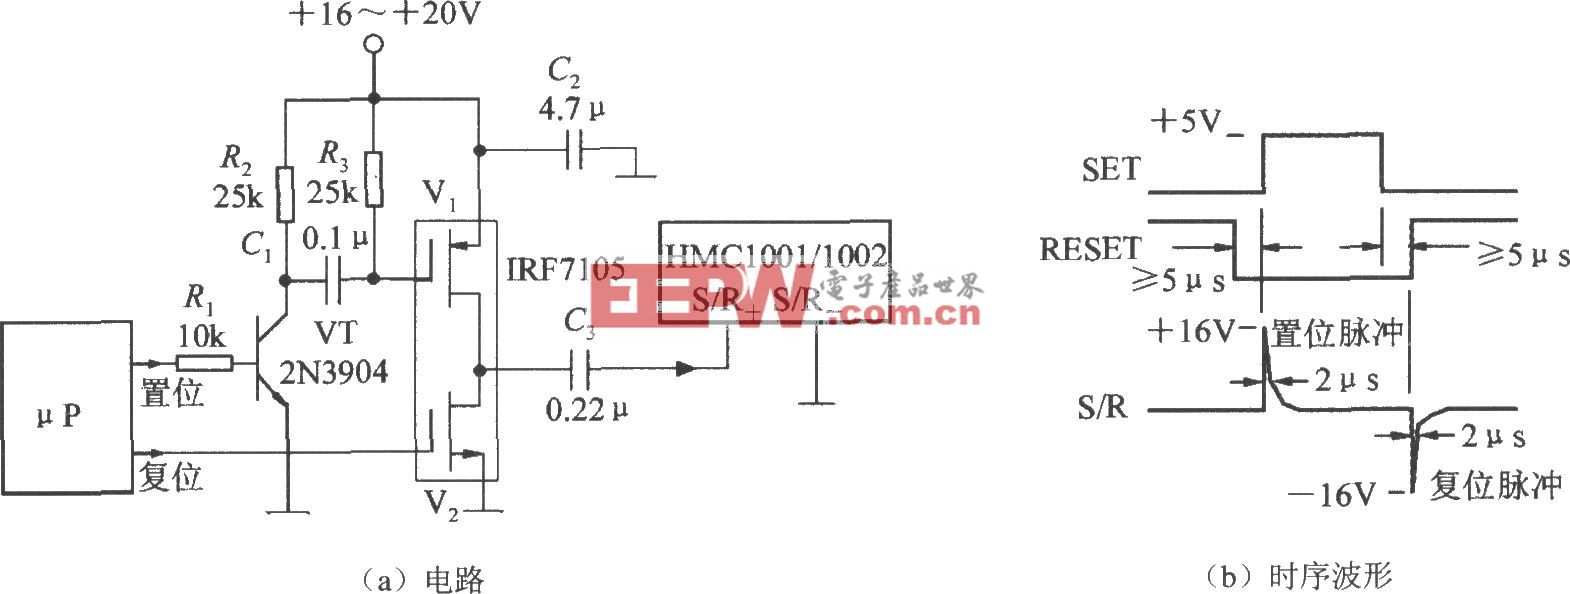 产生S／R(置位/复位)脉冲电路(集成磁场传感器HMC1001/1002)